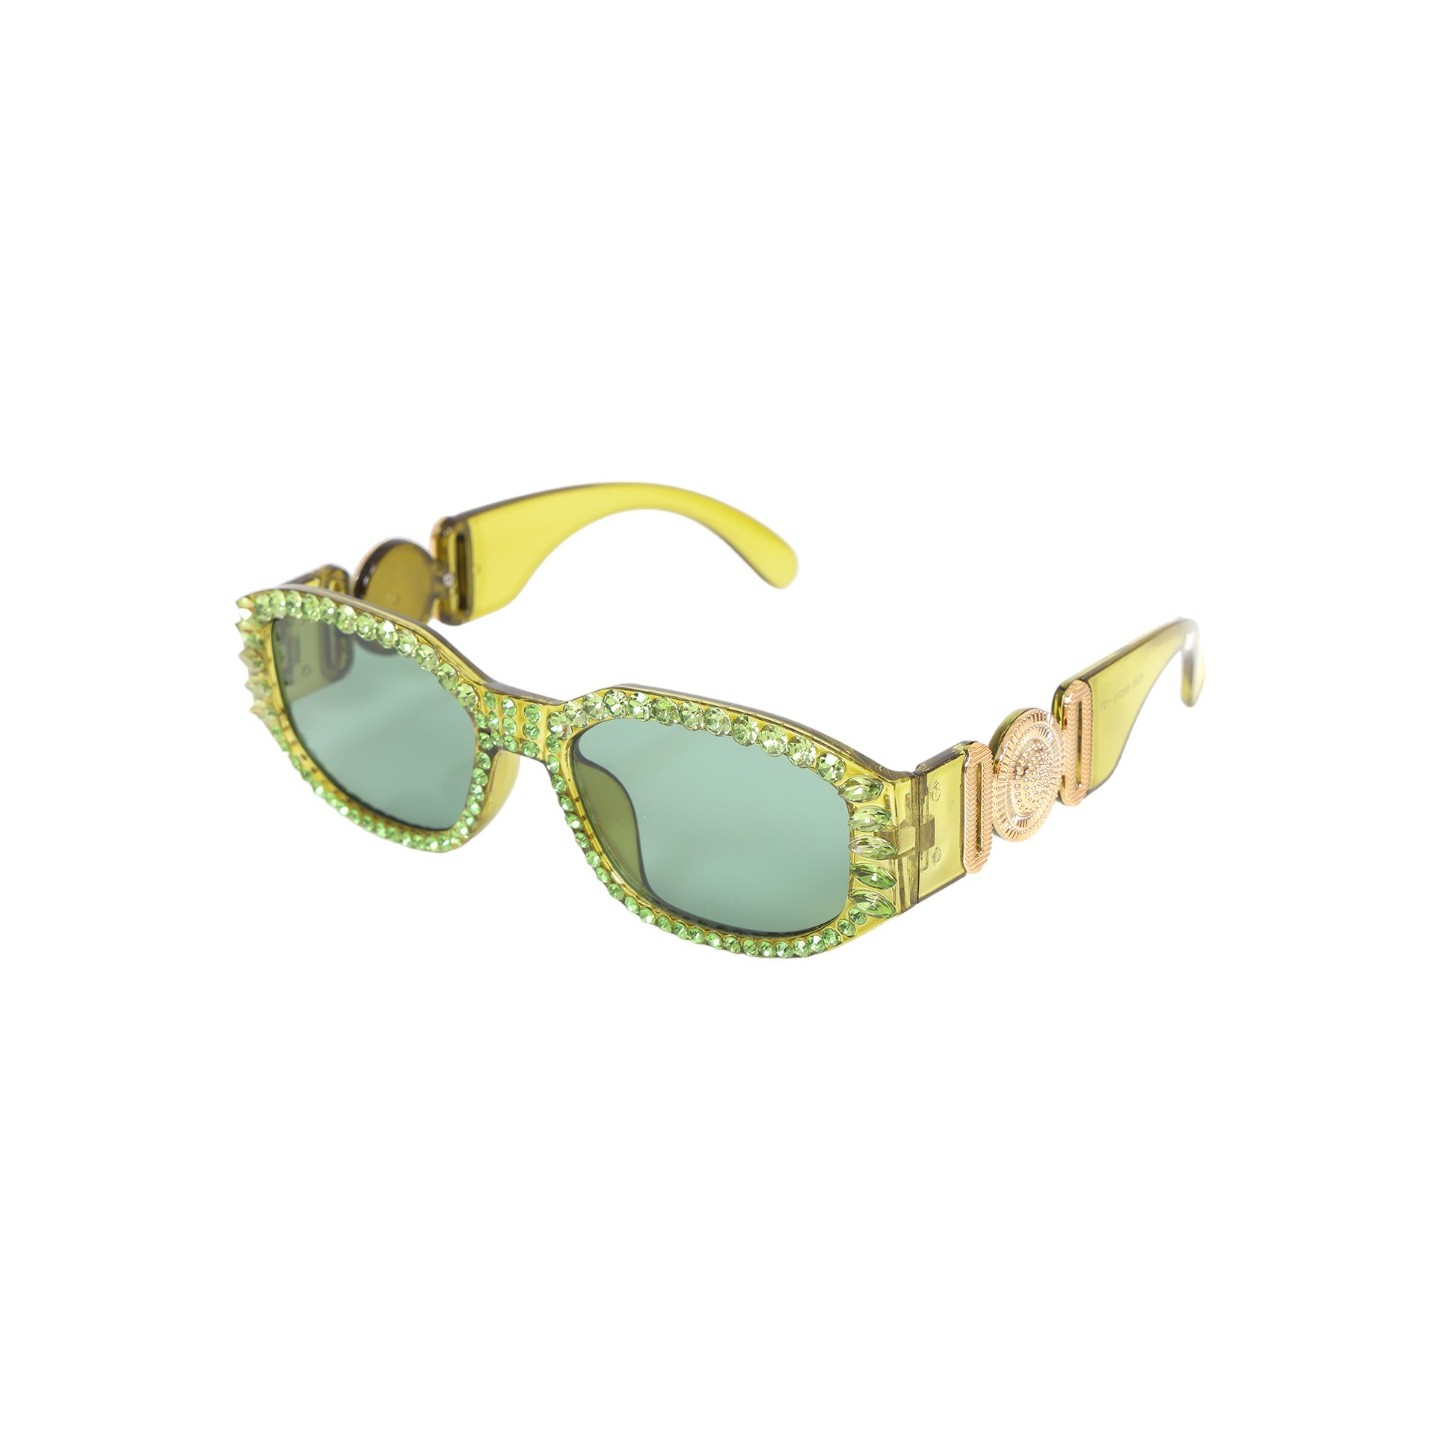 bling glitter bril groen carnaval feestbril